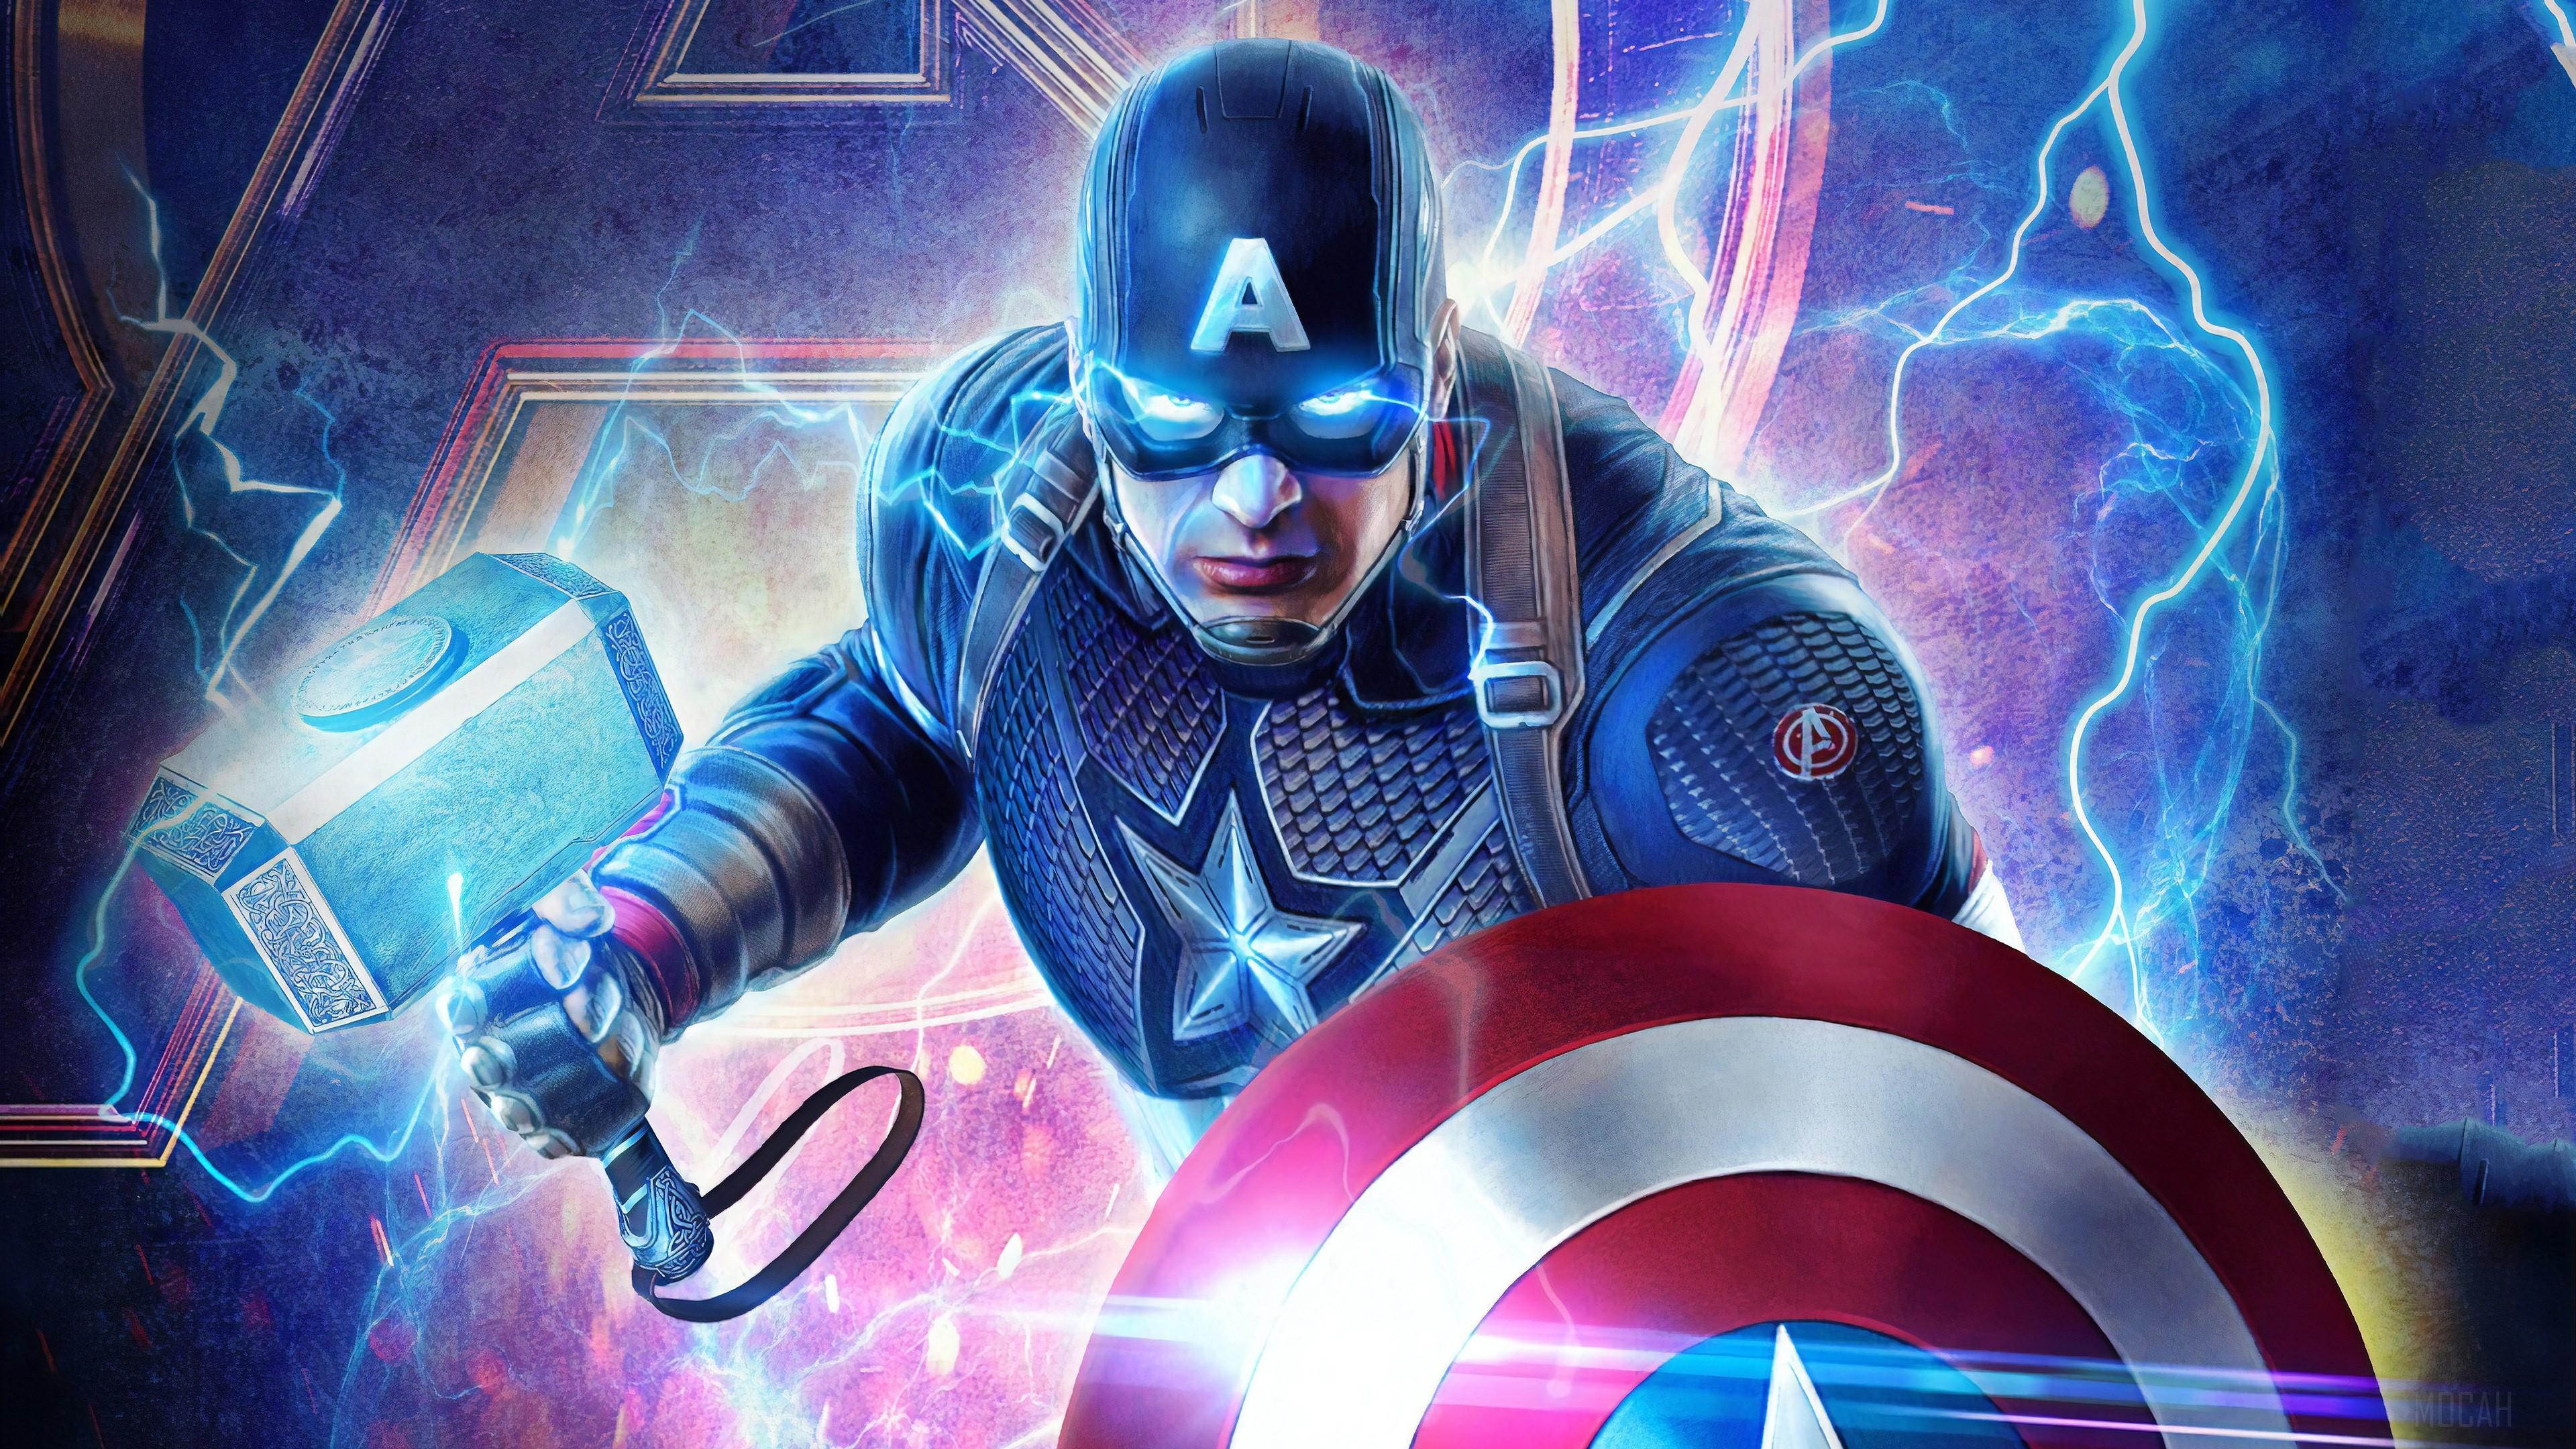 HD wallpaper, 2019 Captain America Mjolnir Avengers Endgame 4K